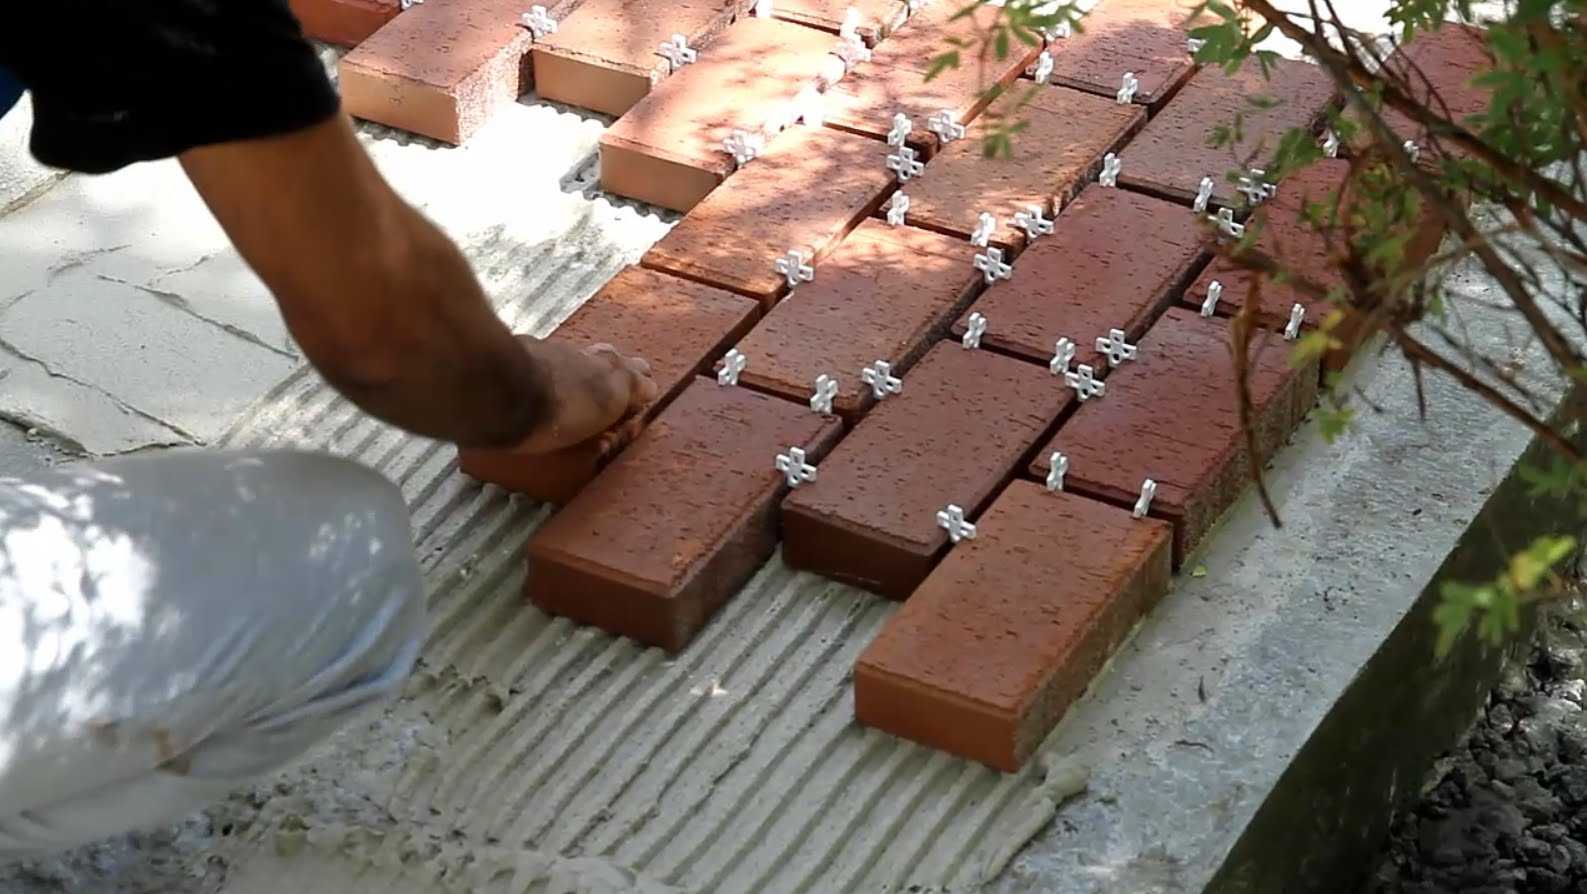 Укладка тротуарной плитки на бетонное основание: плюсы и минусы метода, особенности и рекомендации